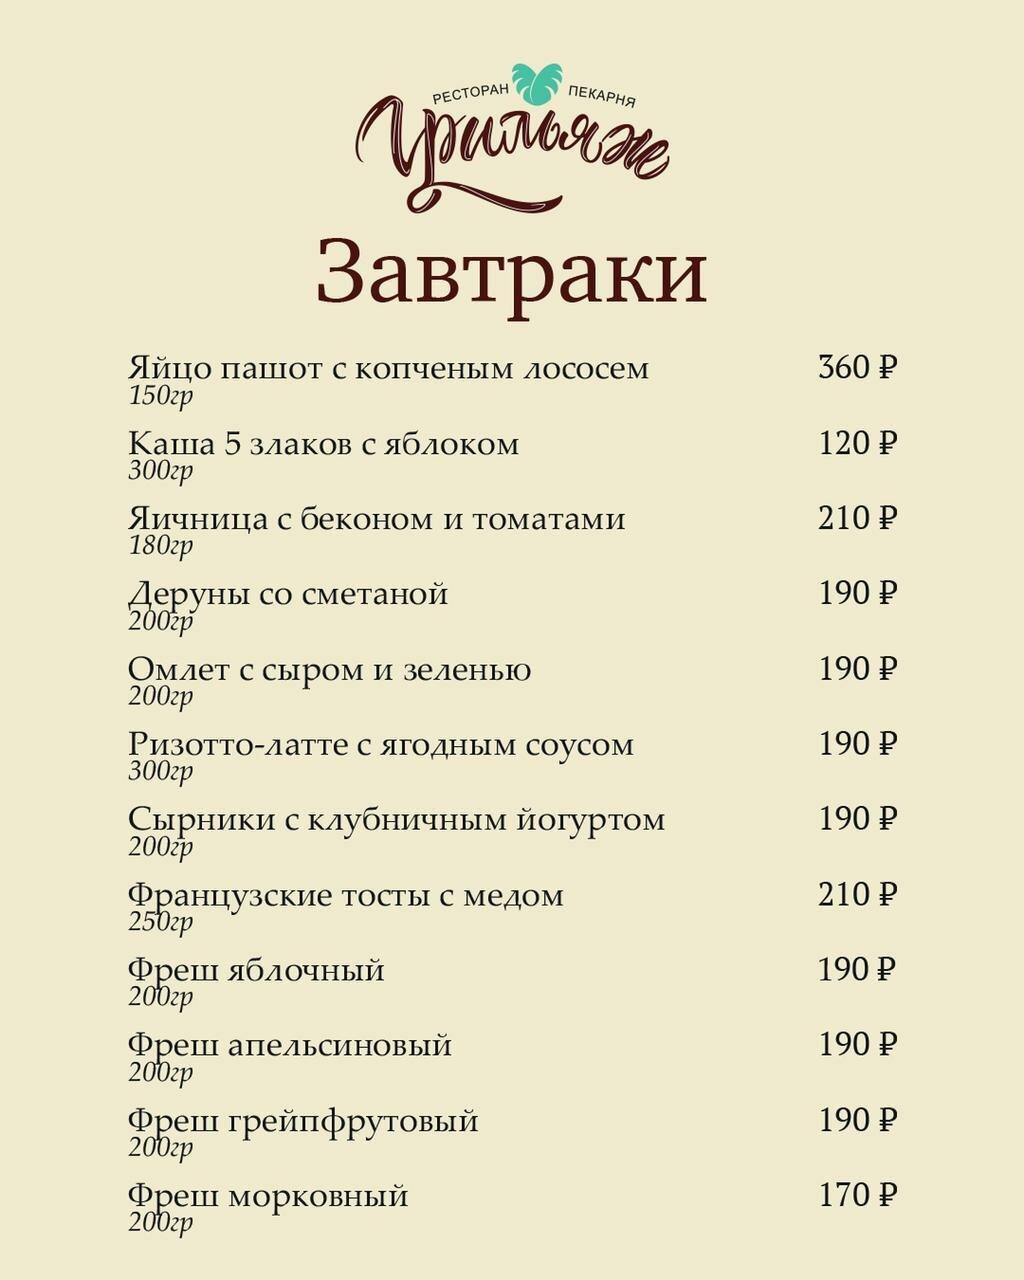 кафе в славянске